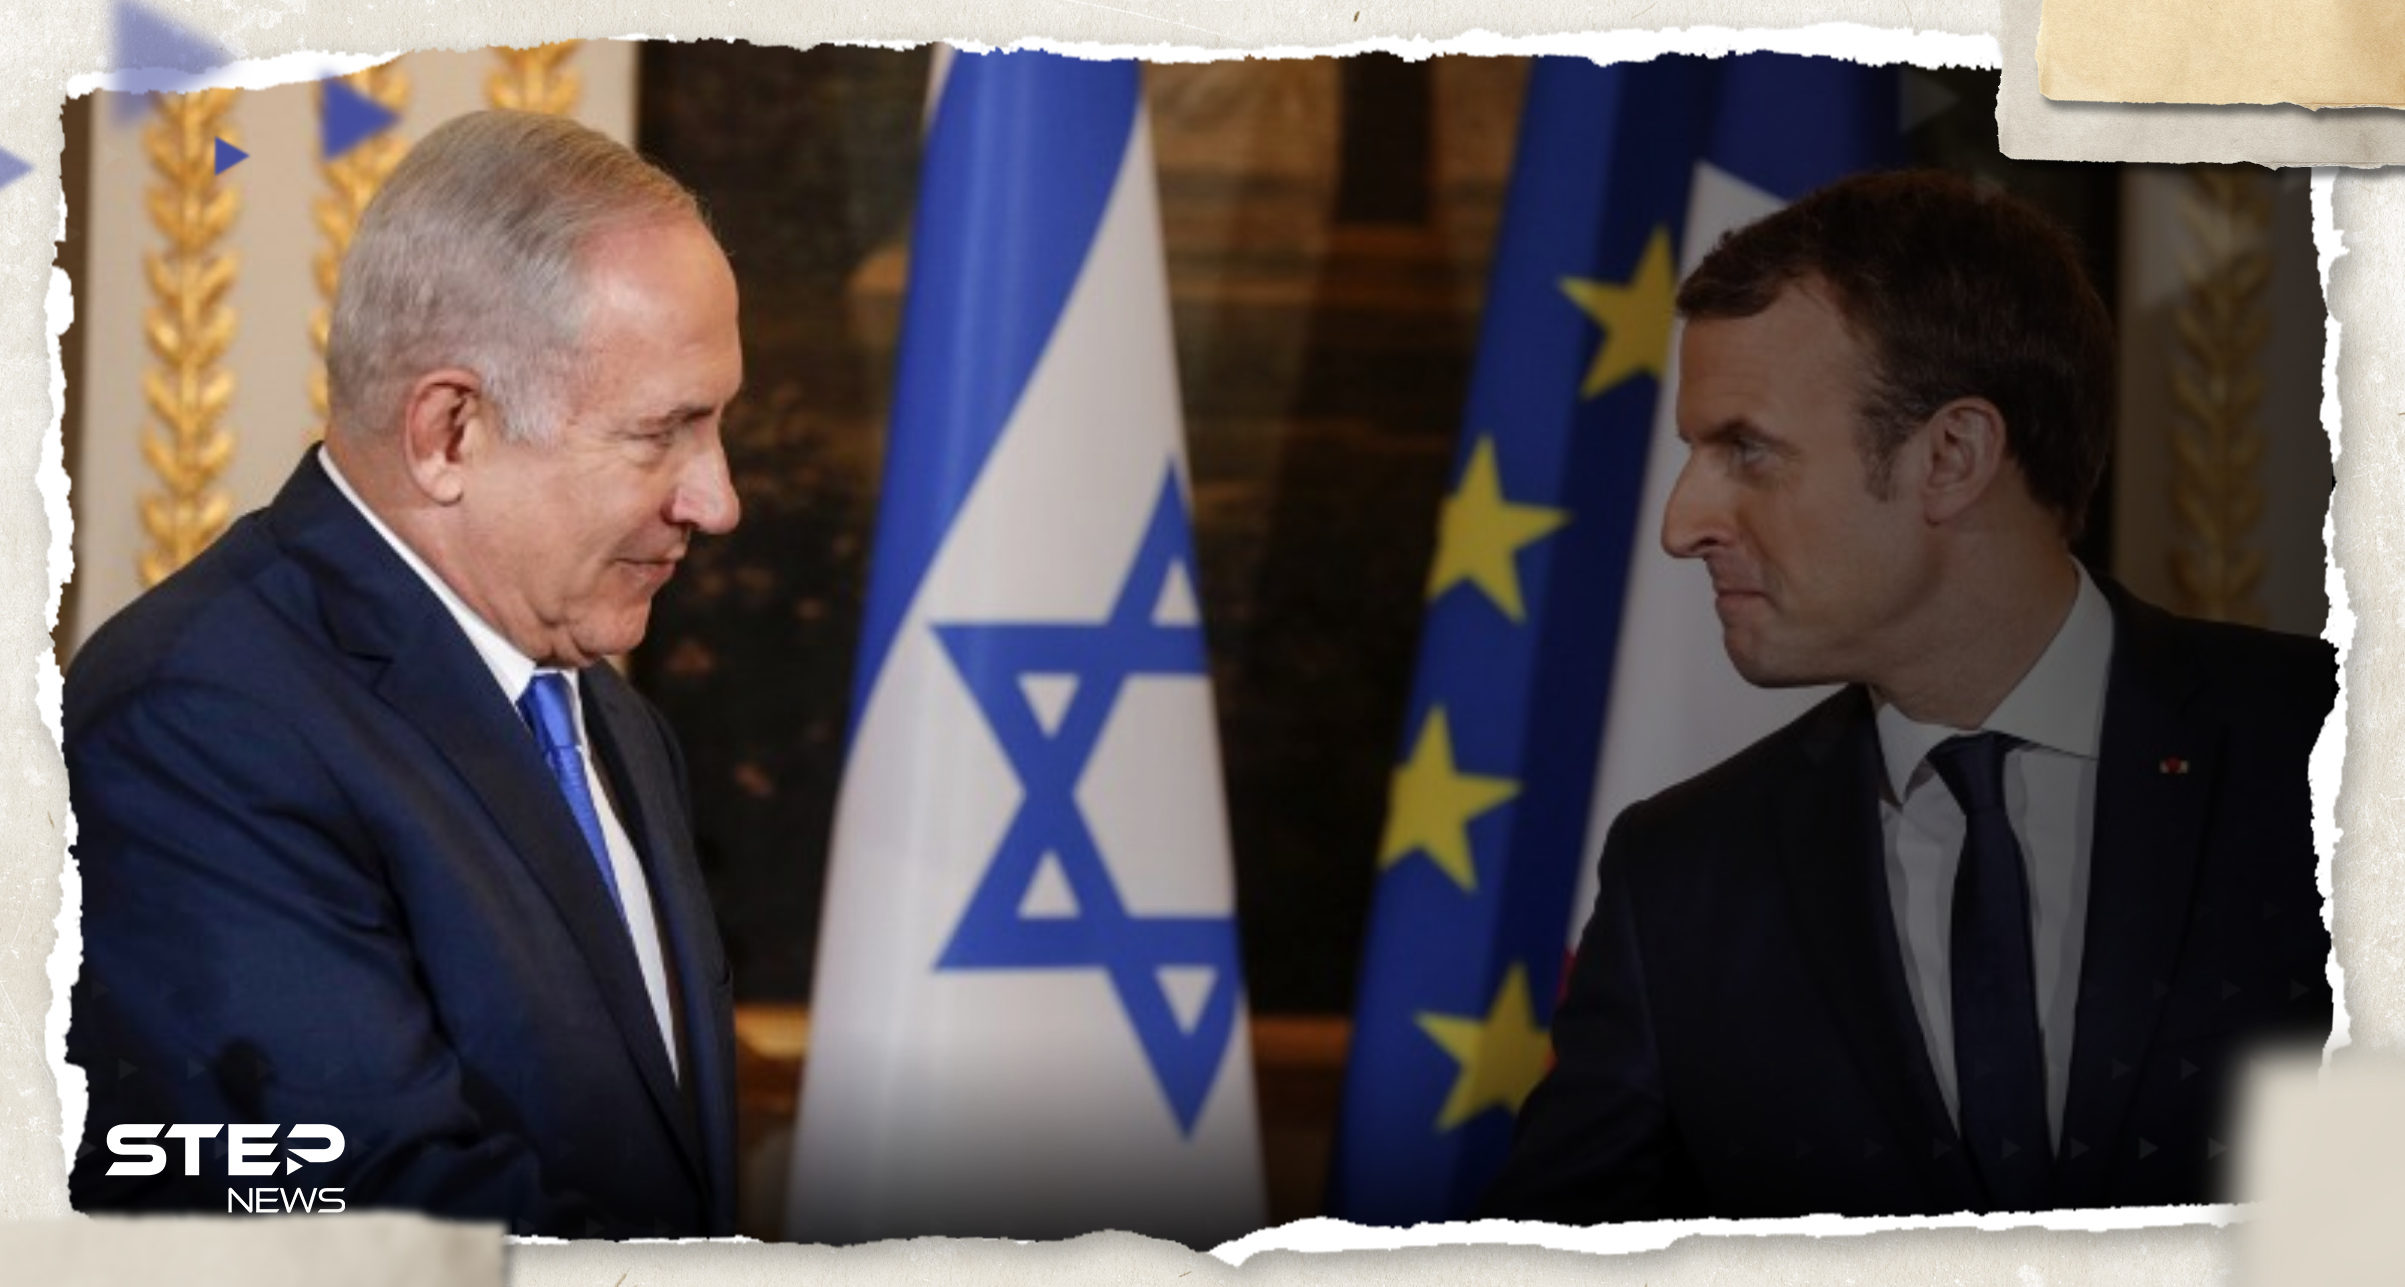 ماكرون يقترح أن يحارب التحالف ضد "داعش" إلى جانب إسرائيل ونتنياهو يحذّر جهتين